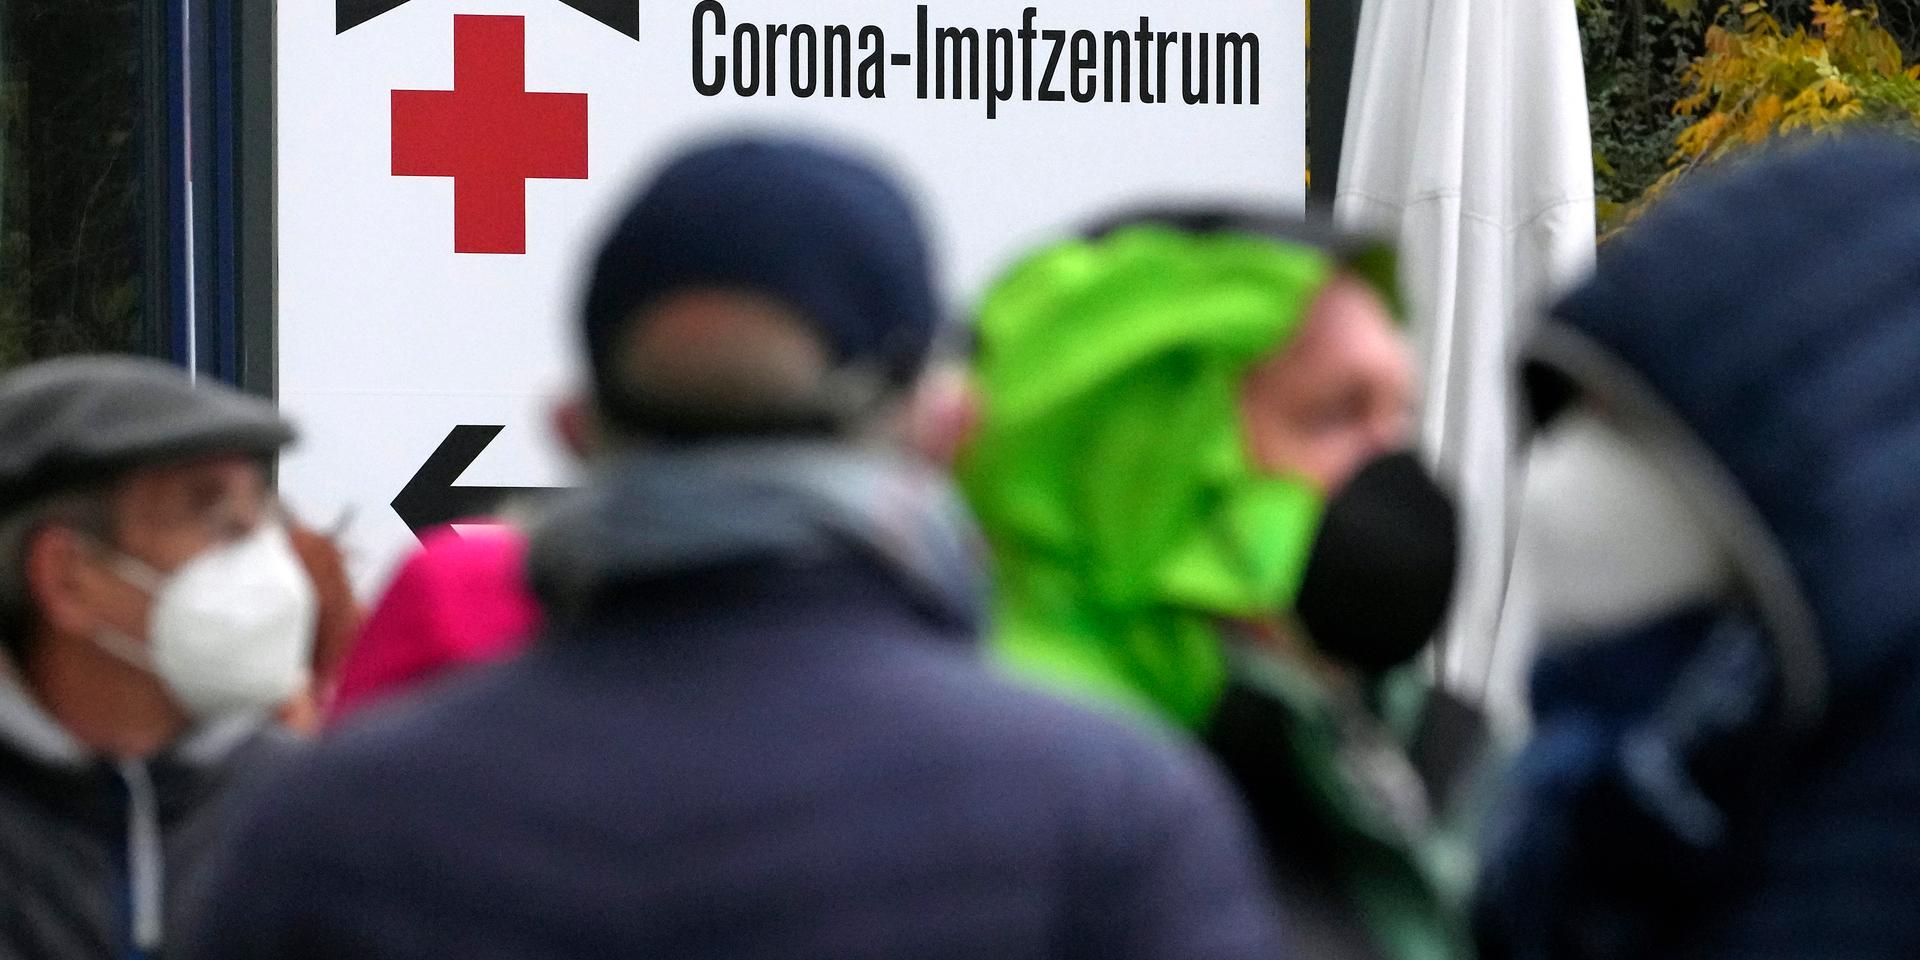 Tyskar köar utanför ett vaccinationscenter i Berlin i måndags. Smittokurvorna pekar rakt upp här liksom i flera andra europeiska länder.